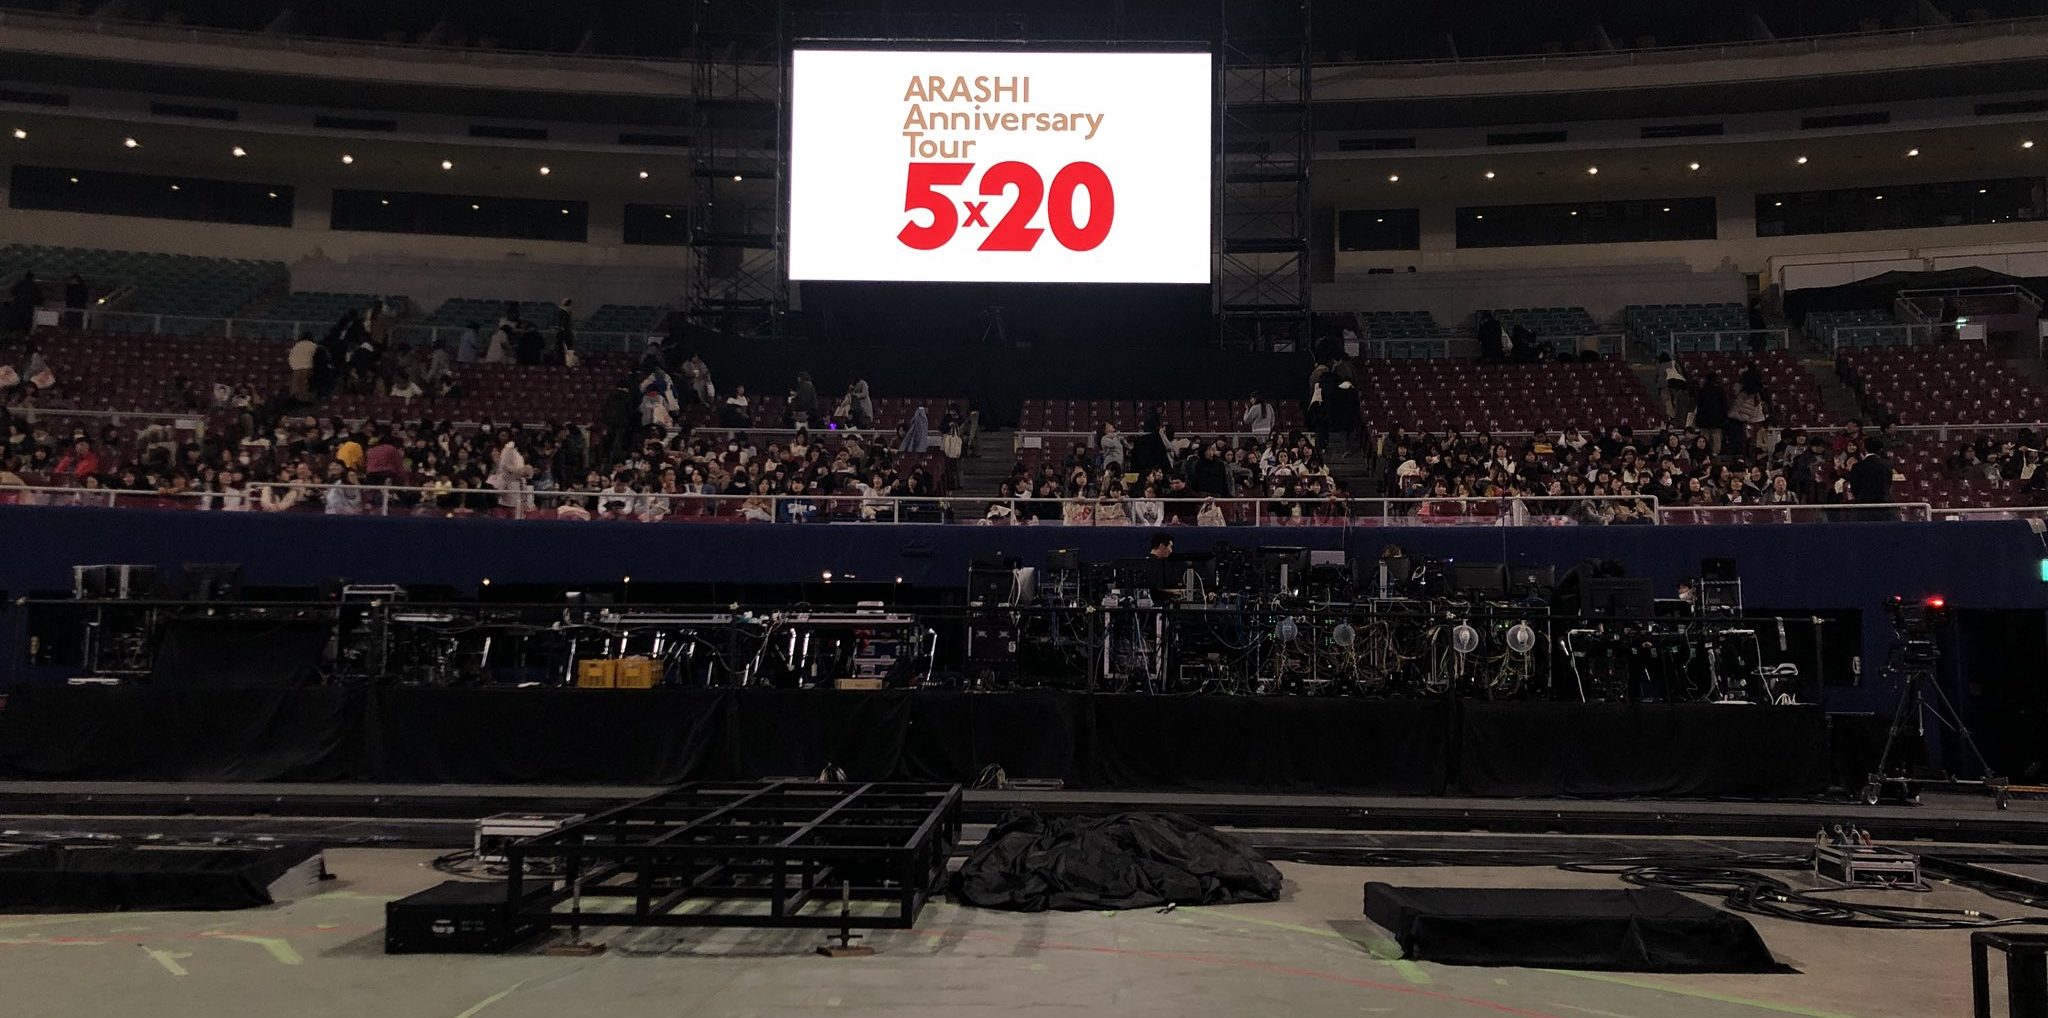 嵐 コンサート 名古屋 Arashi Anniversary Tour 5 20 ナゴヤドーム